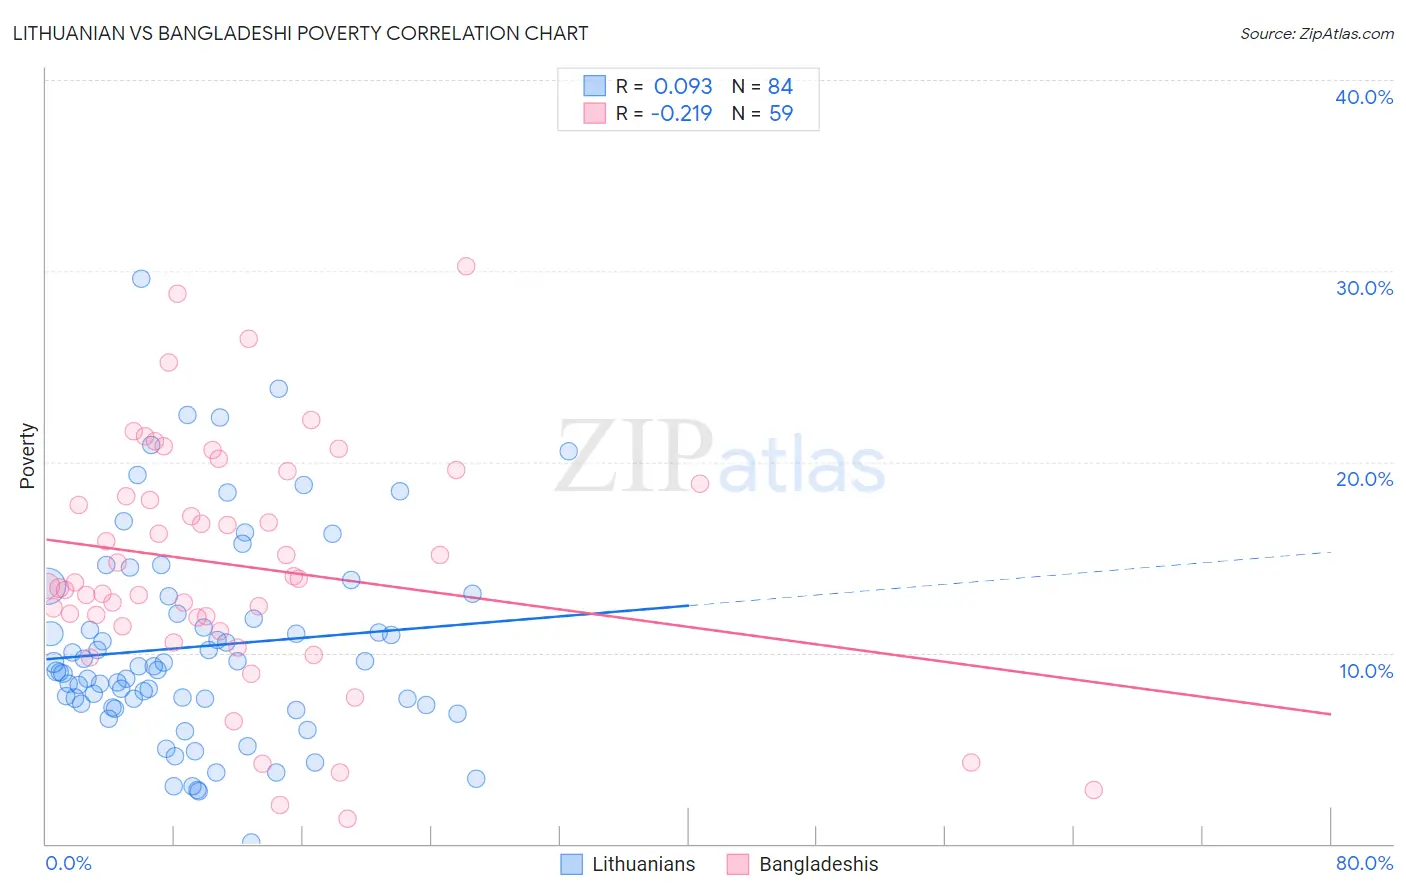 Lithuanian vs Bangladeshi Poverty